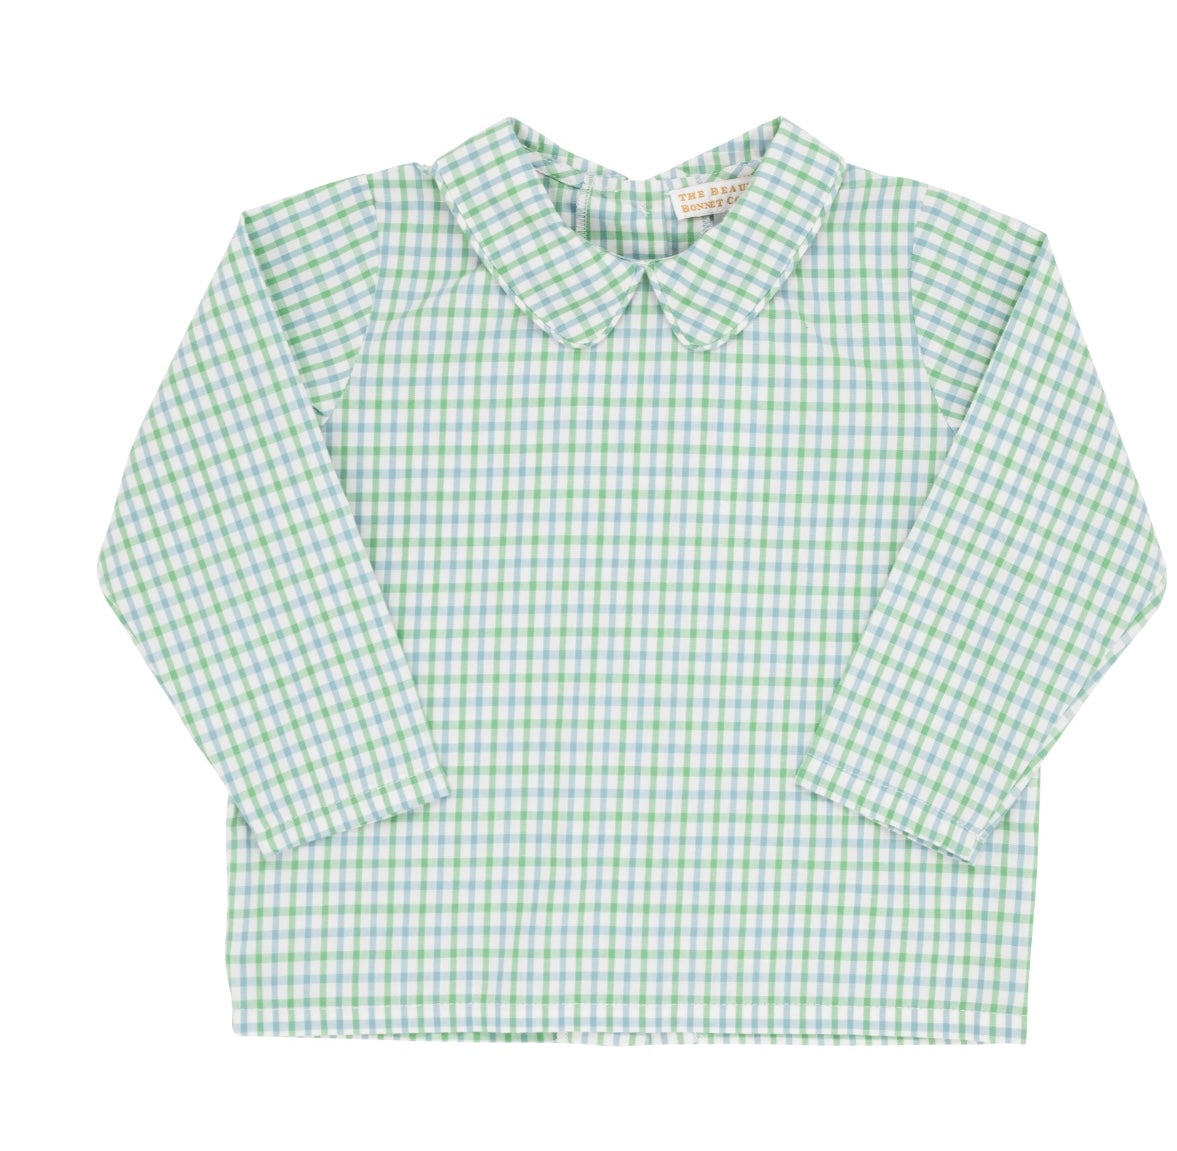 Peter Pan Collar Shirt L/S - Barrington Blue Check